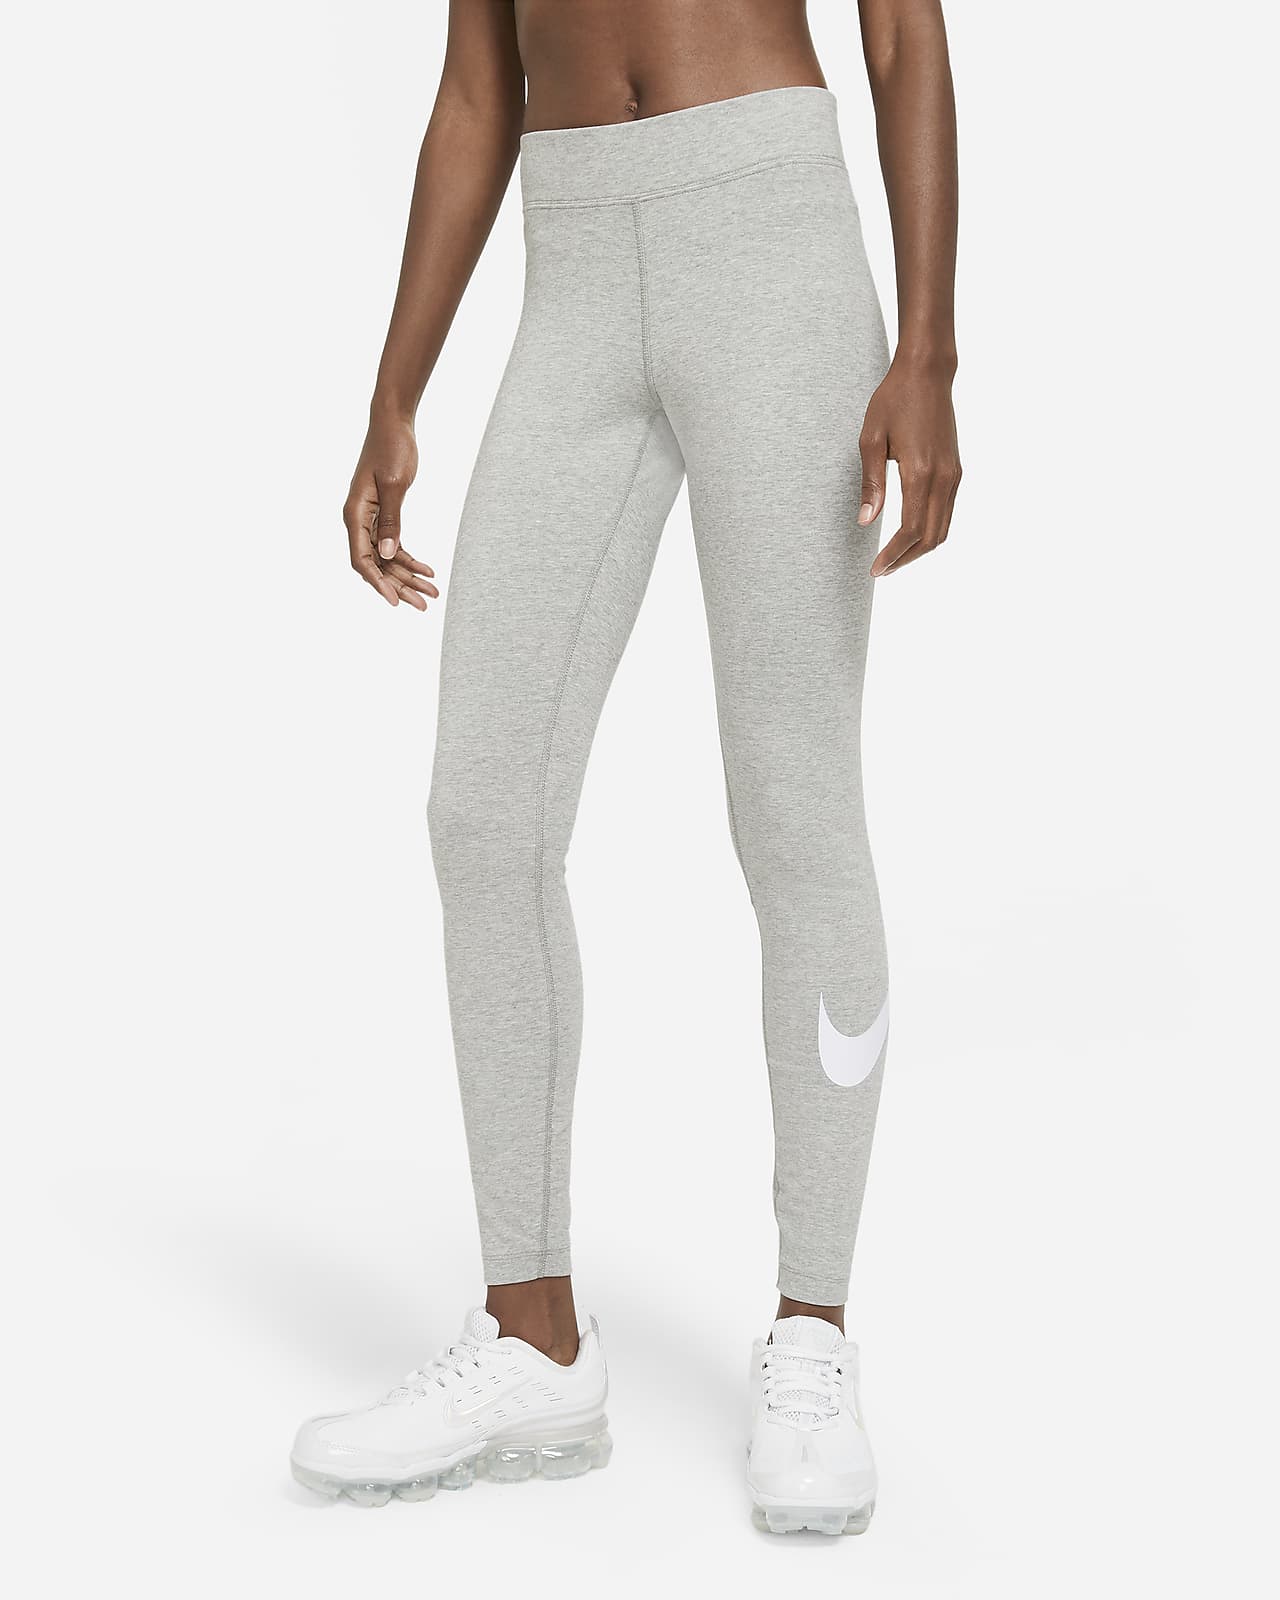 Γυναικείο κολάν μεσαίου ύψους με σχέδιο Swoosh Nike Sportswear Essential